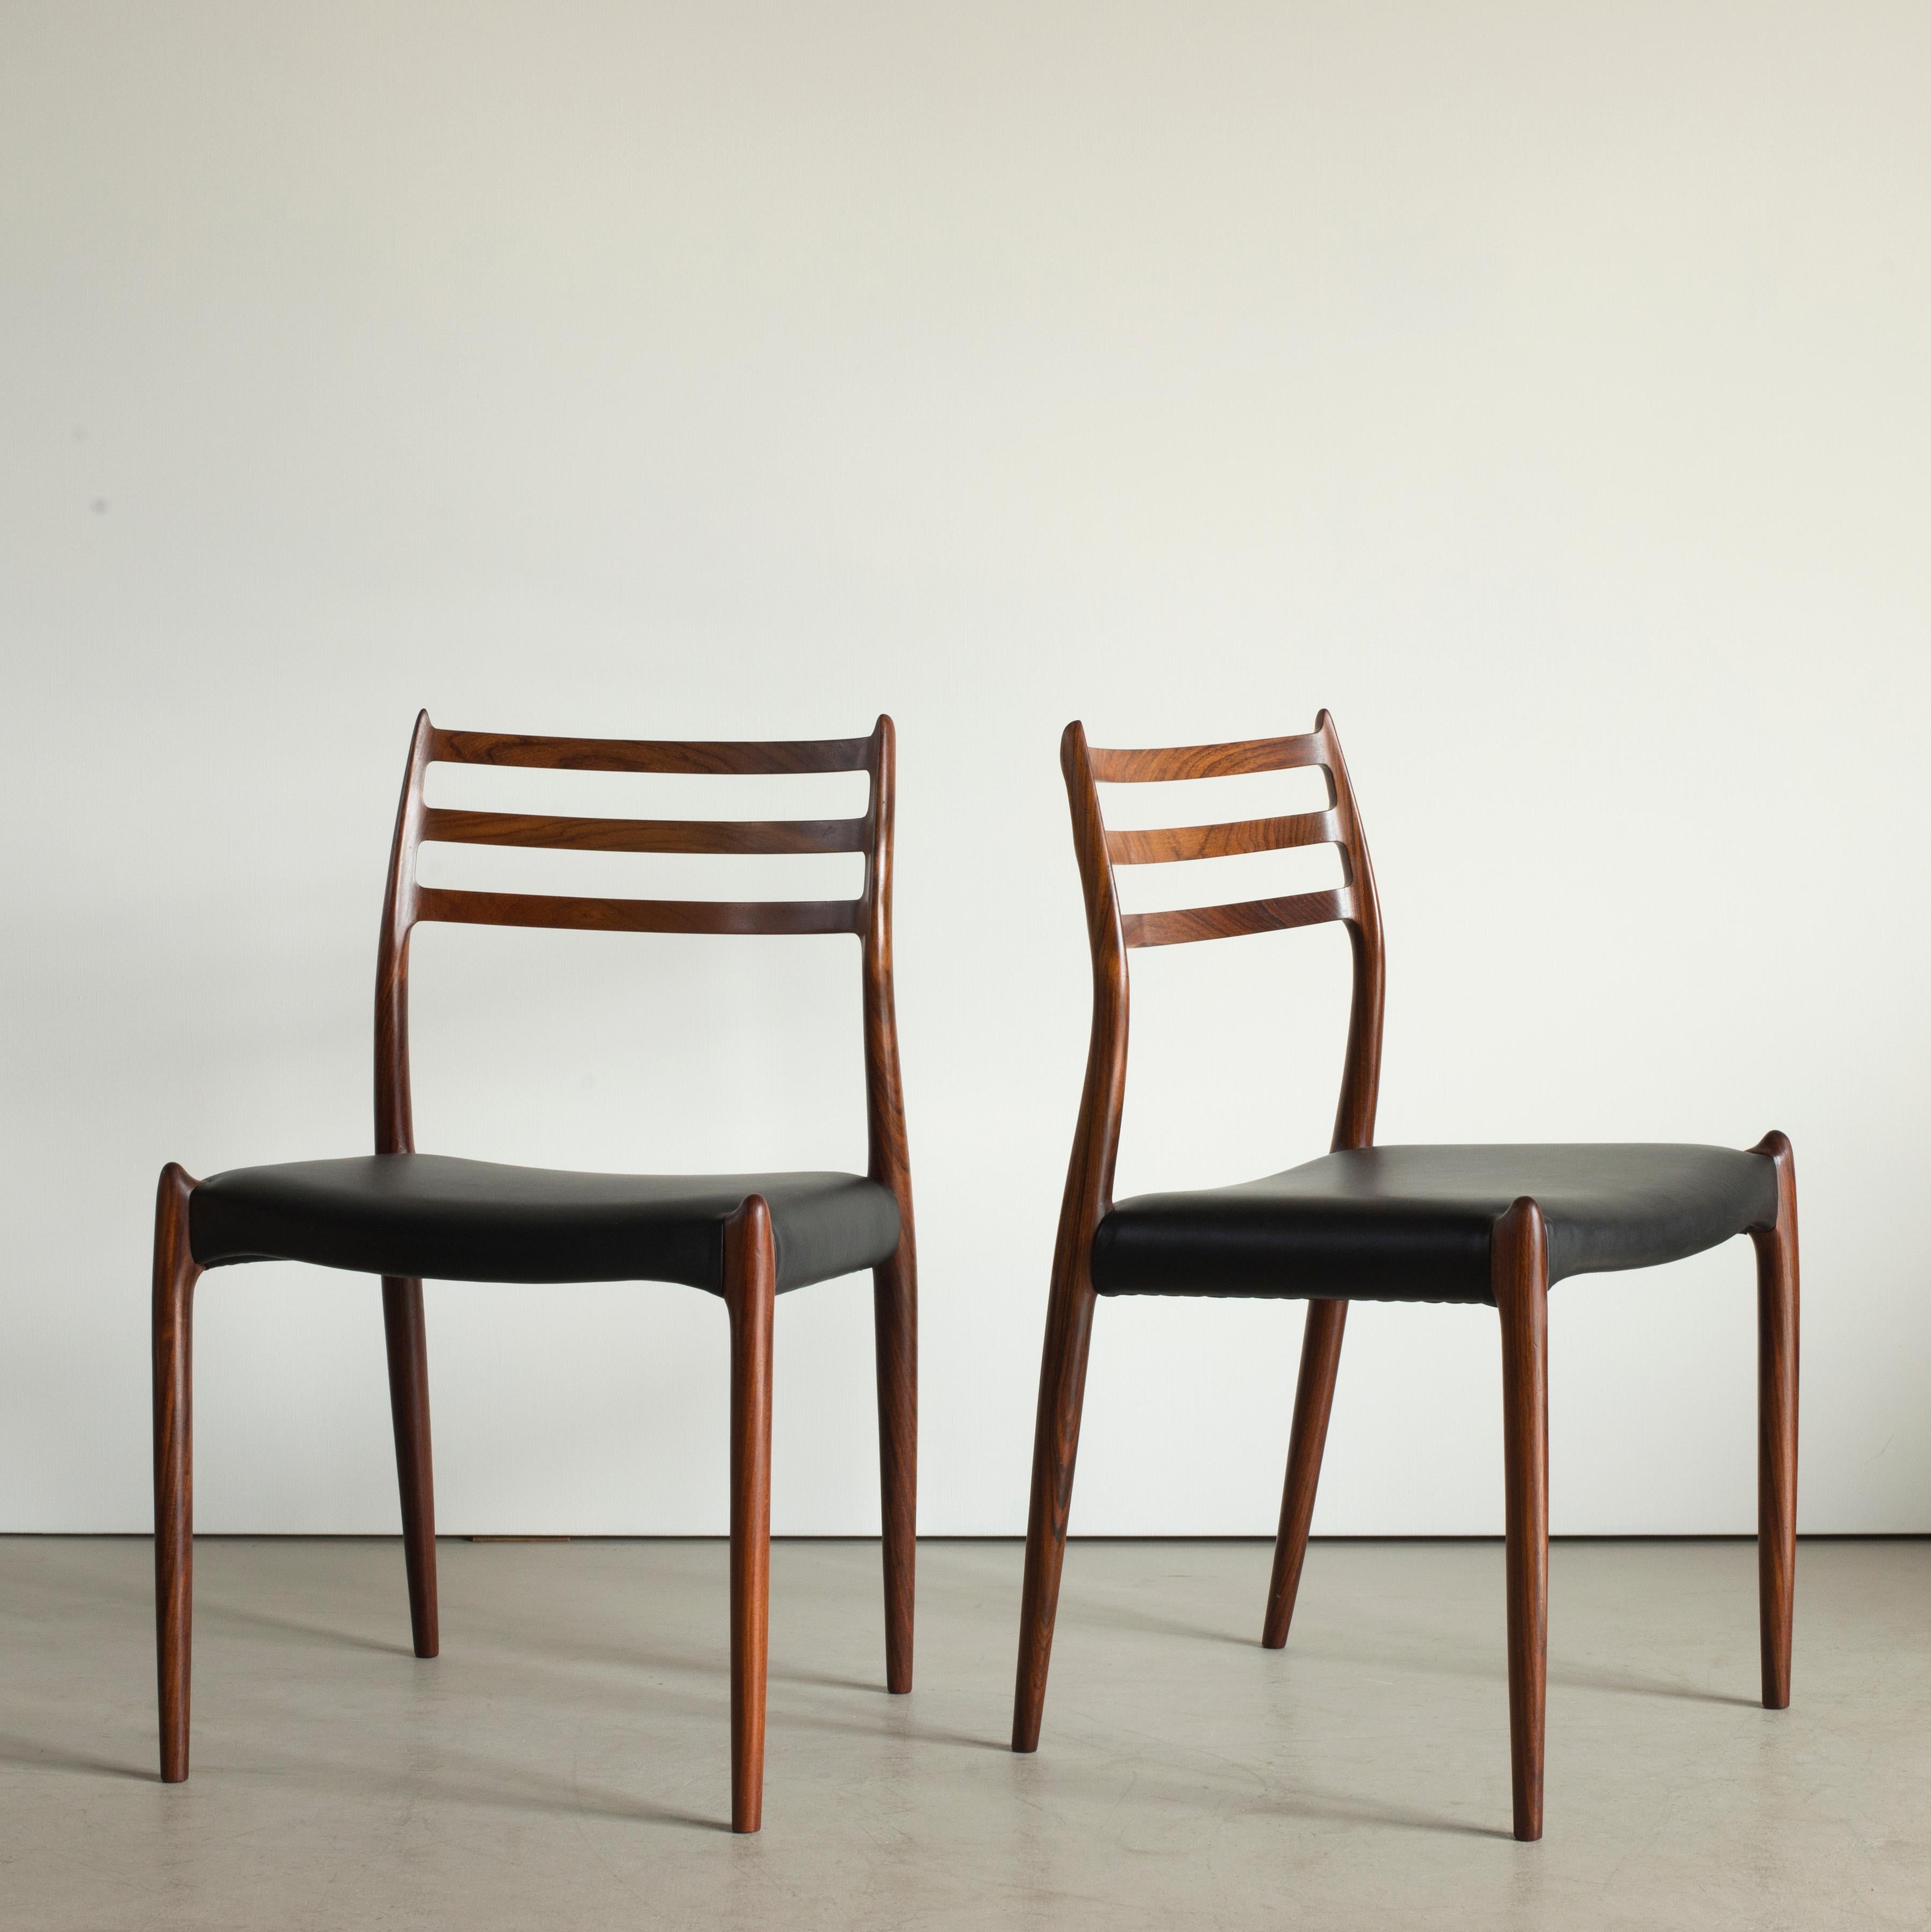 Ensemble de six chaises Niels O. Møller en bois de rose, sièges recouverts de cuir noir. Fabriqué par J. L. Møller, Danemark.